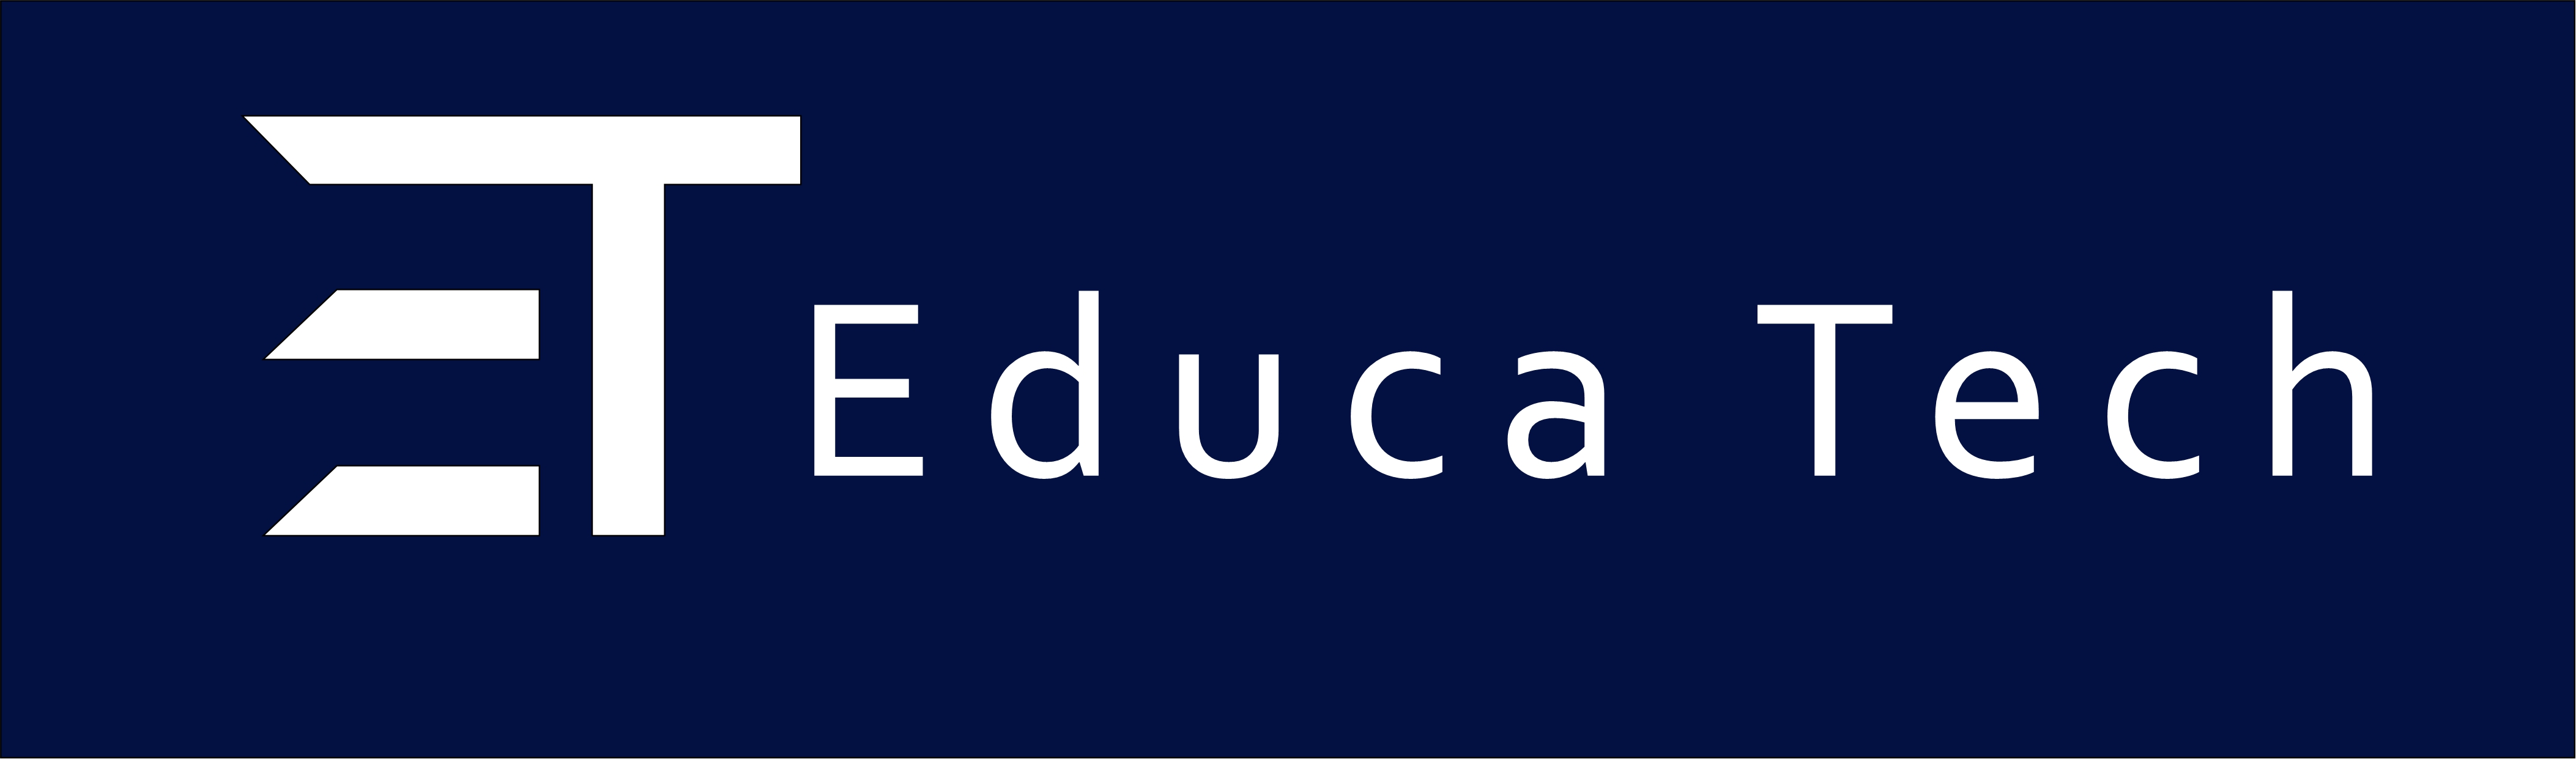 logo institulo legal educa tech